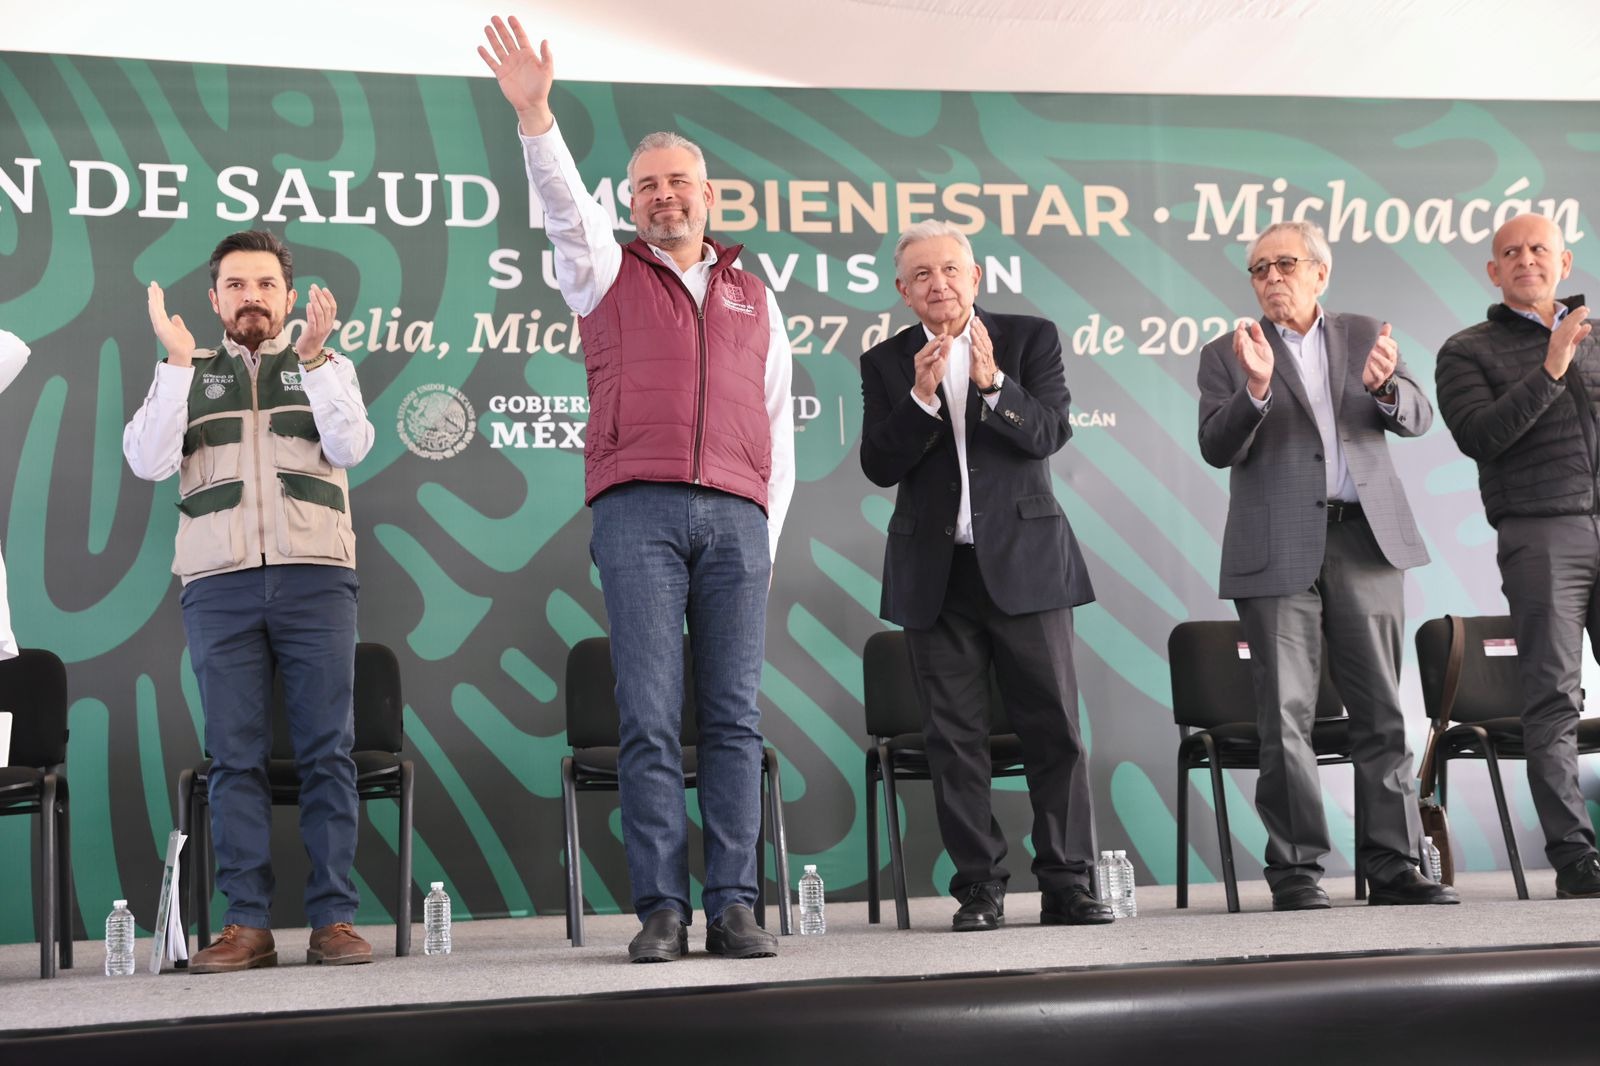 *Bedolla y Presidente de México concretan incorporación de Michoacán al Plan de Salud IMSS Bienestar*